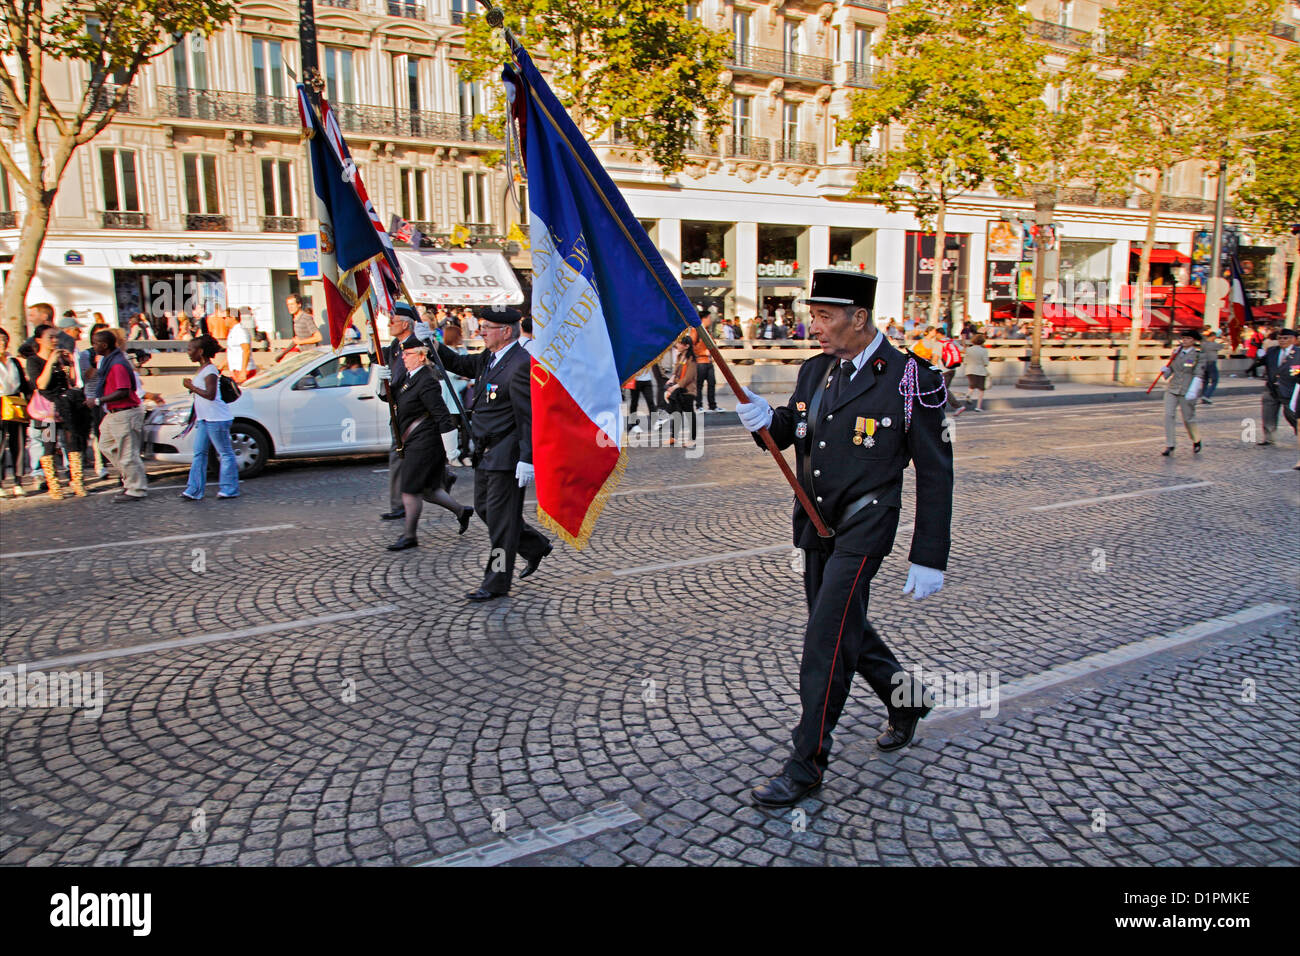 Parade of the Paris Fire Brigade - French Brigade des Sapeurs-Pompiers de Paris on Champs-Élysées and at Arc de Triomphe Stock Photo